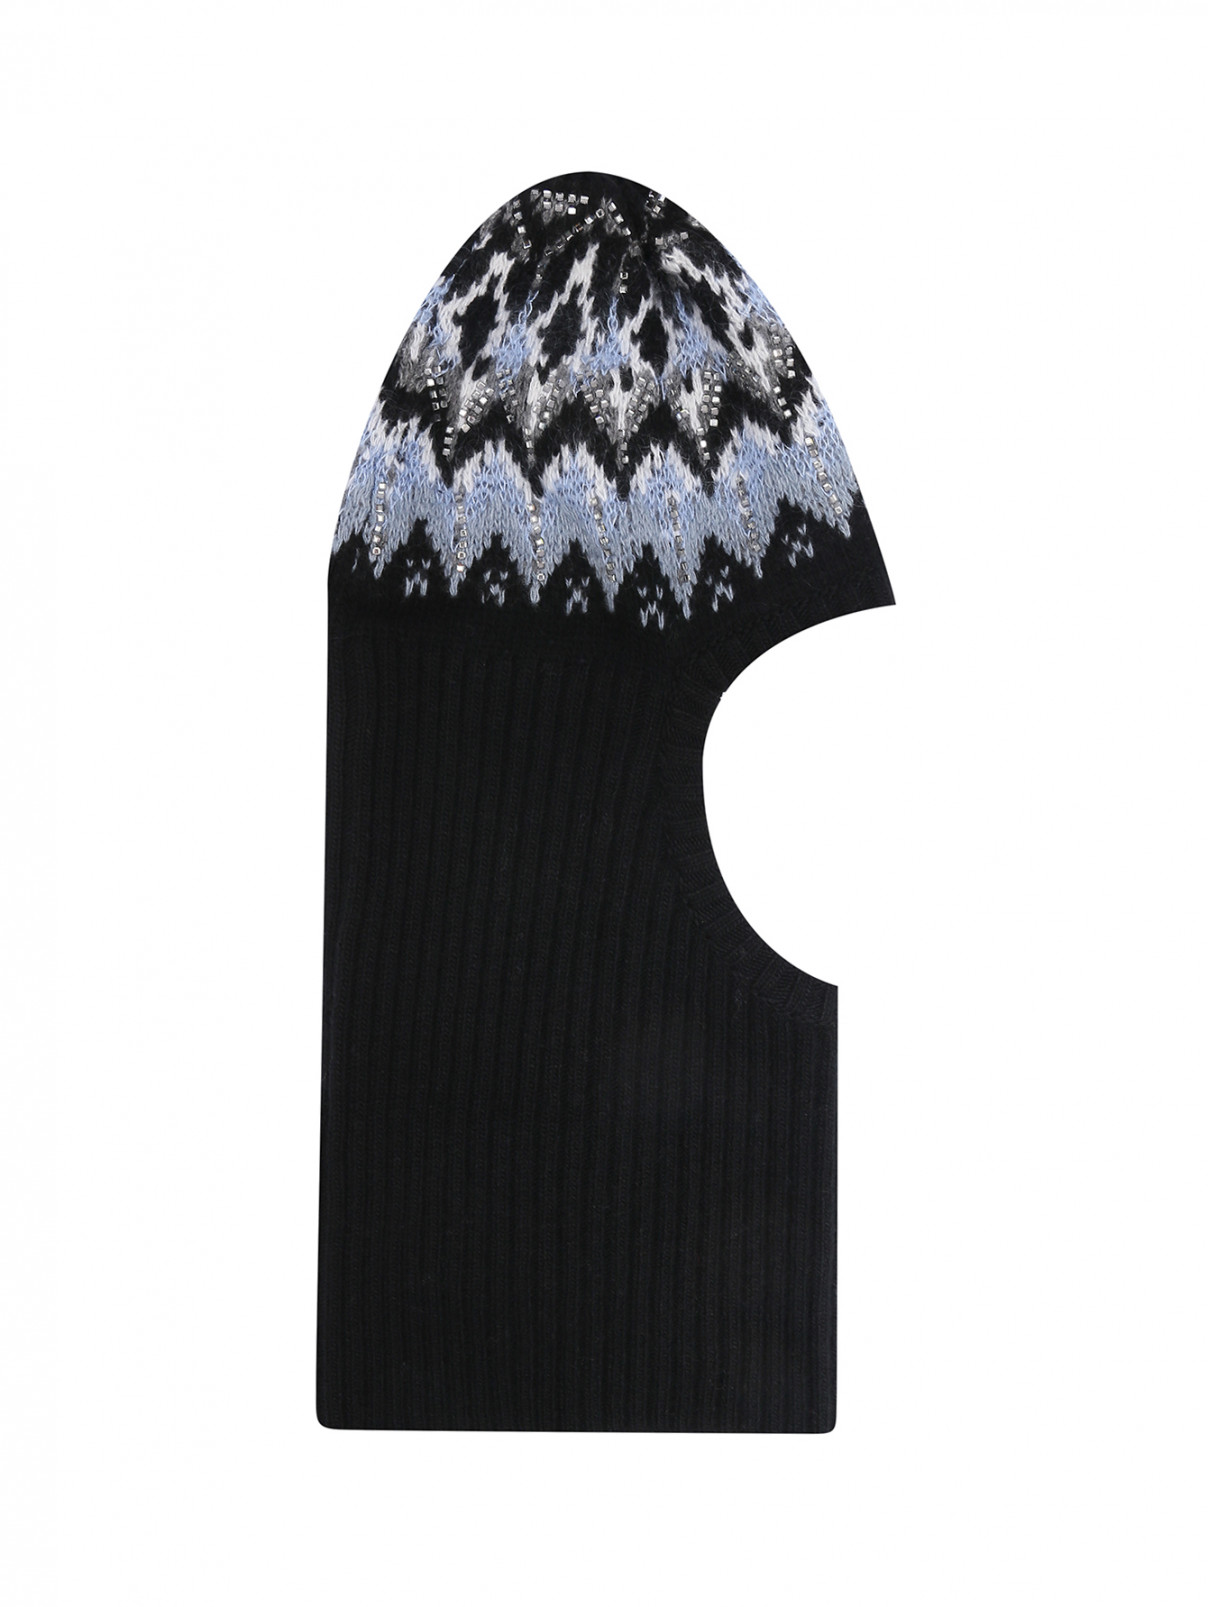 Балаклава из шерсти и кашемира, декорированная кристаллами Ermanno Scervino  –  Общий вид  – Цвет:  Черный